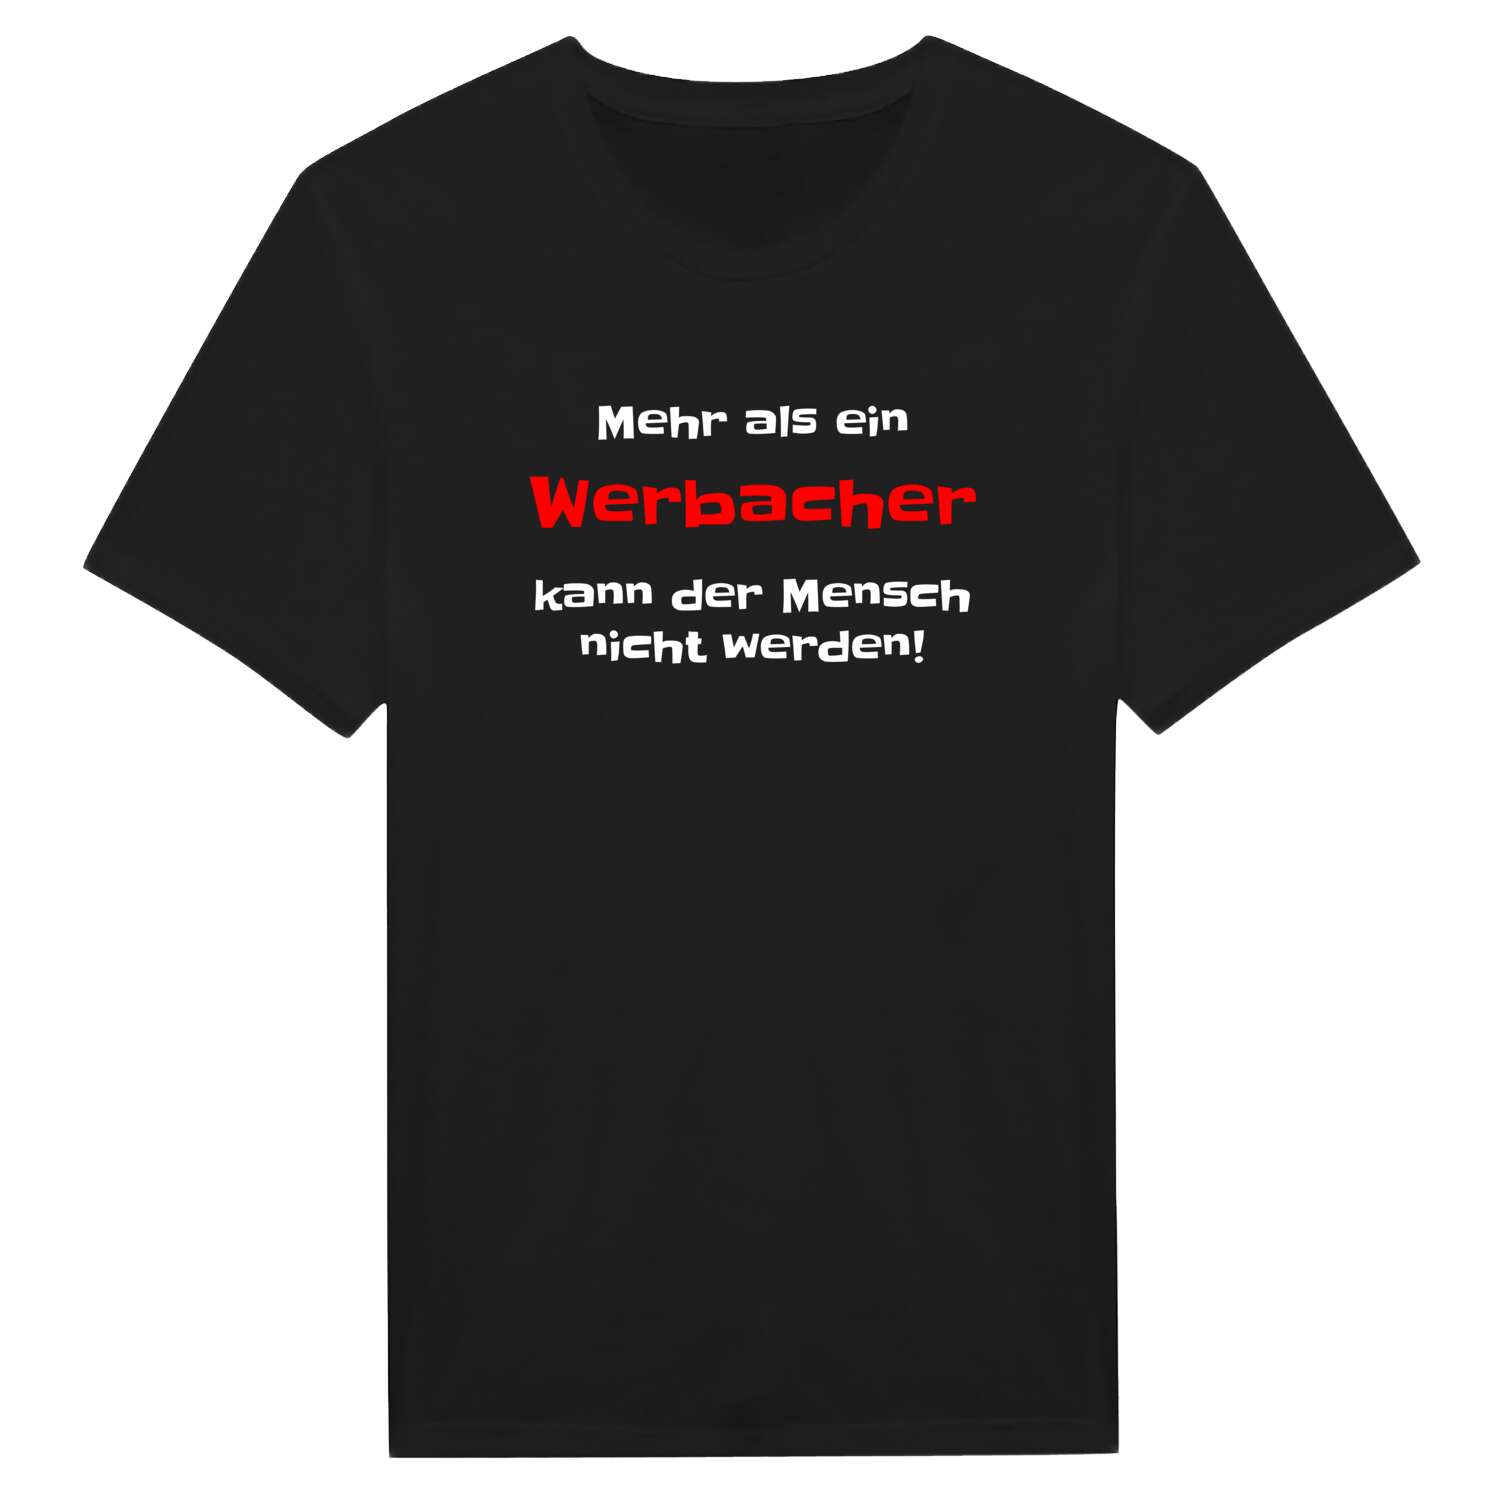 Werbach T-Shirt »Mehr als ein«